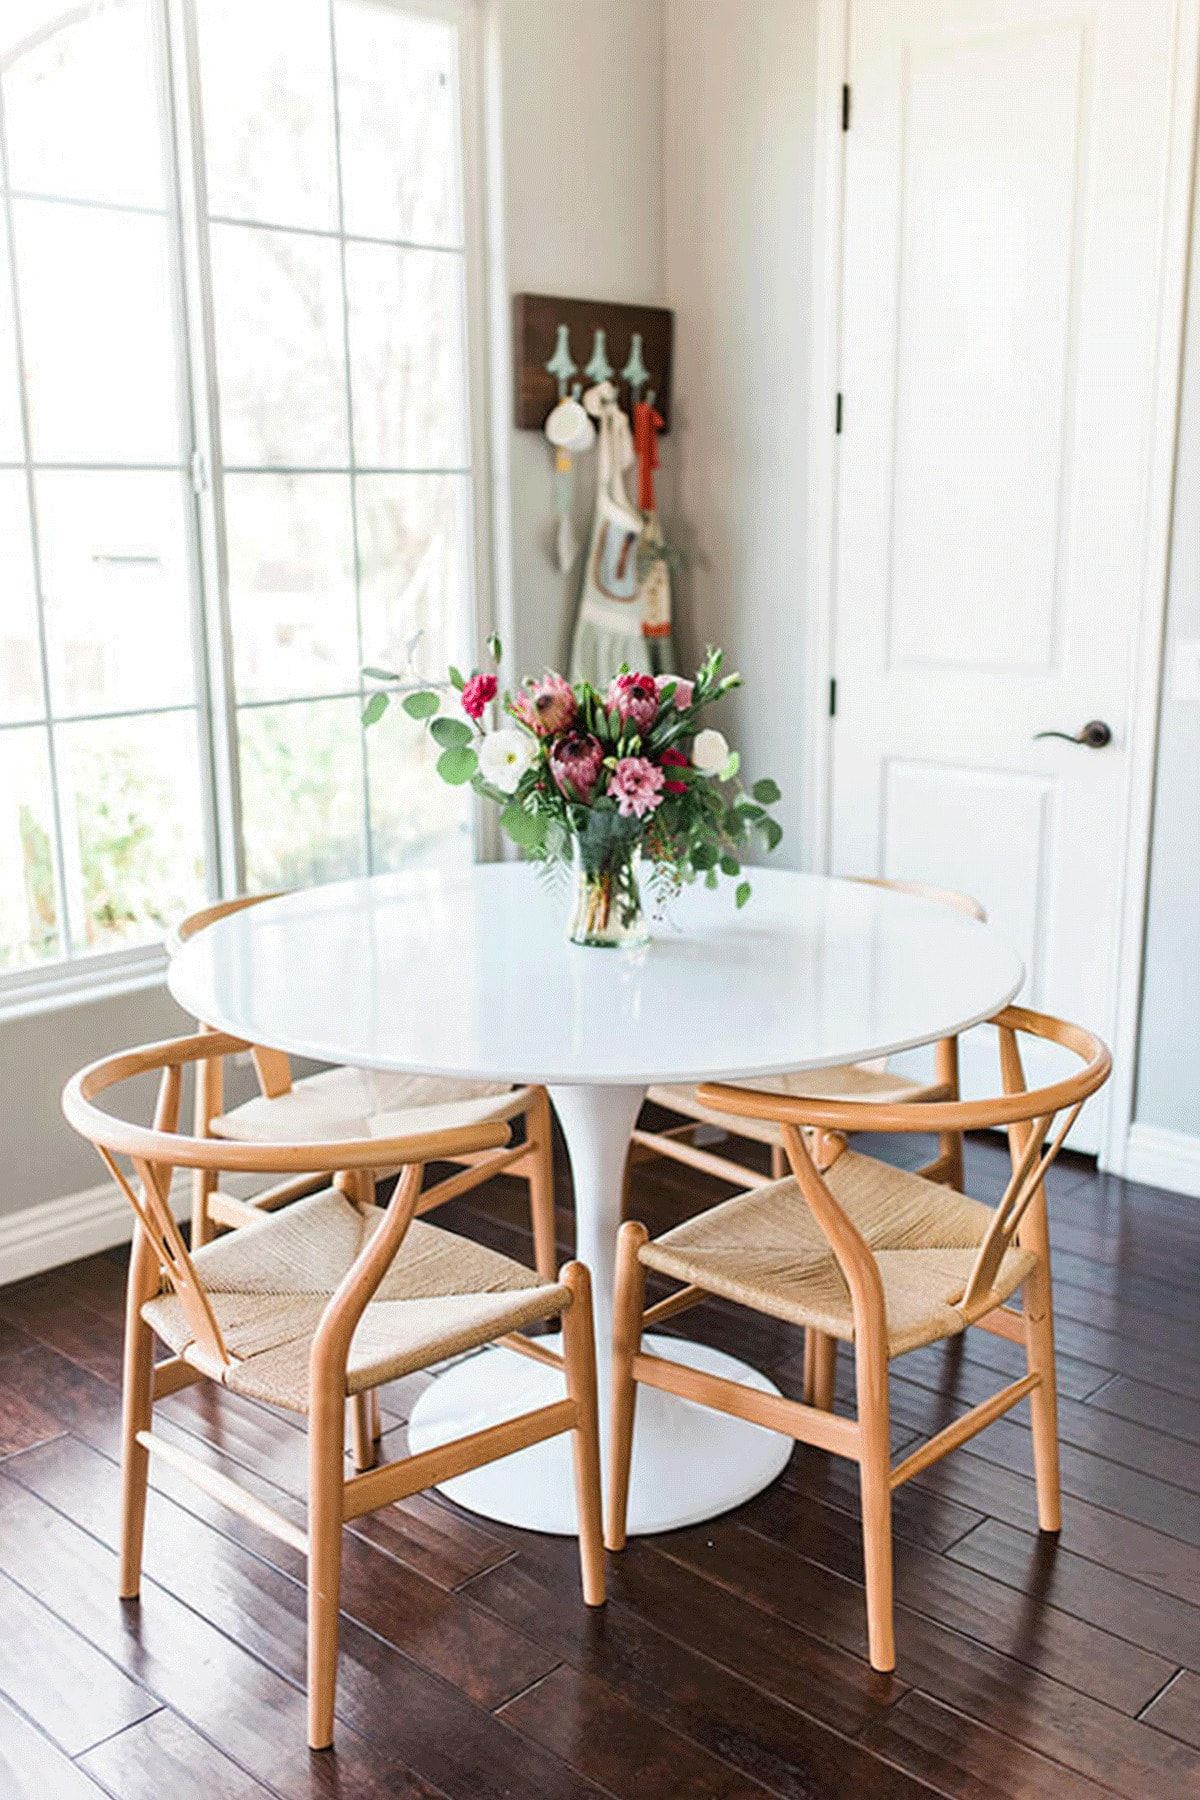 подобрать стулья к деревянному столу